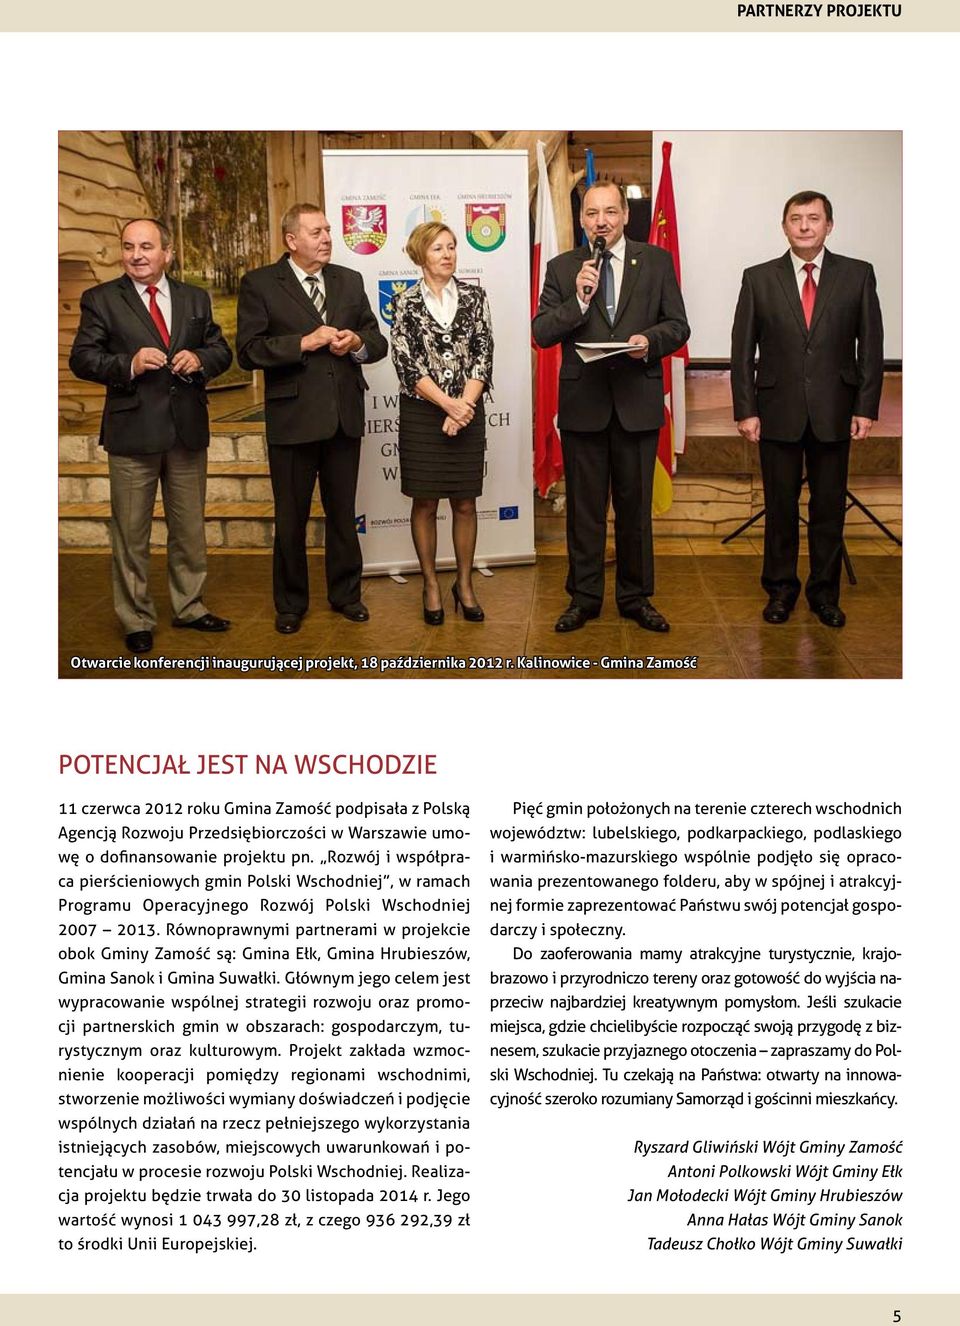 Rozwój i współpraca pierścieniowych gmin Polski Wschodniej, w ramach Programu Operacyjnego Rozwój Polski Wschodniej 2007 2013.